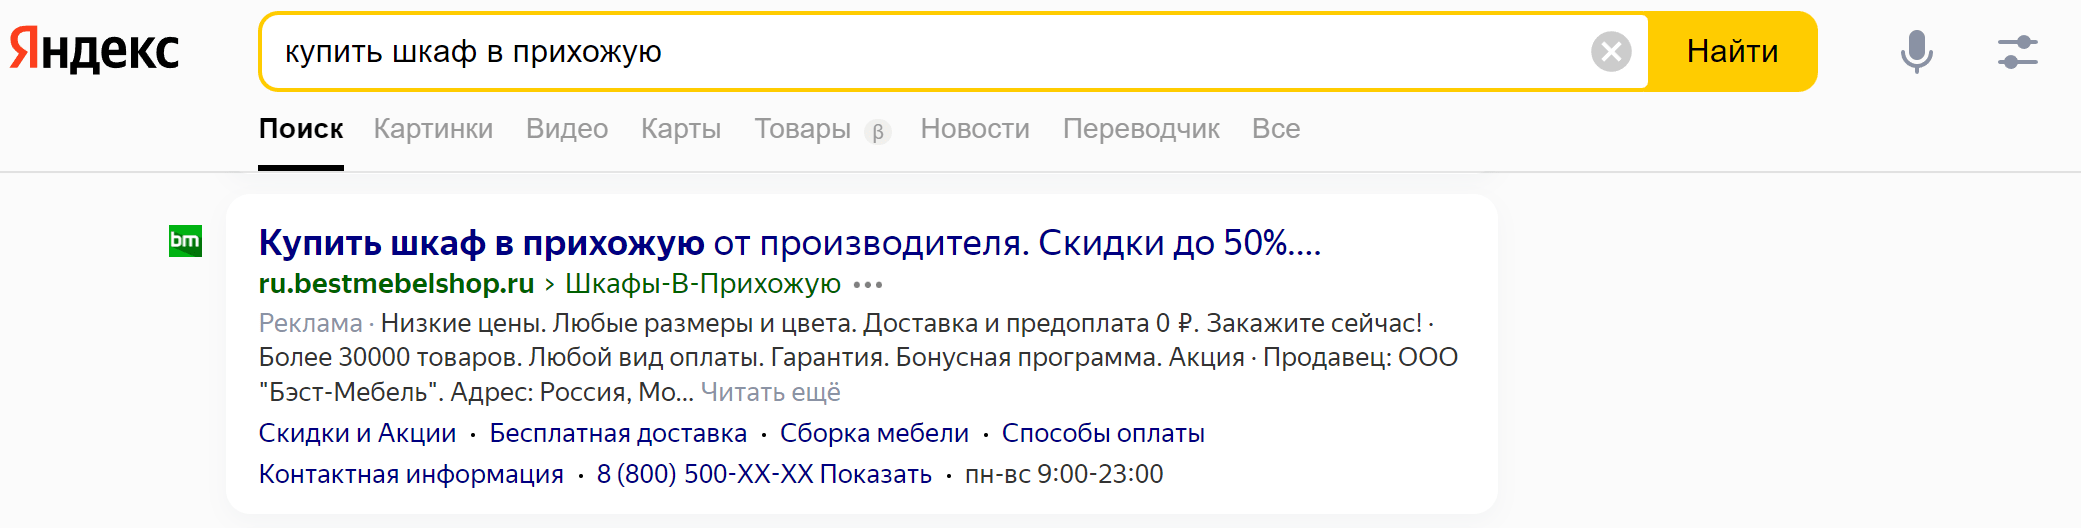 Пример релевантного заголовка Яндекс Директ